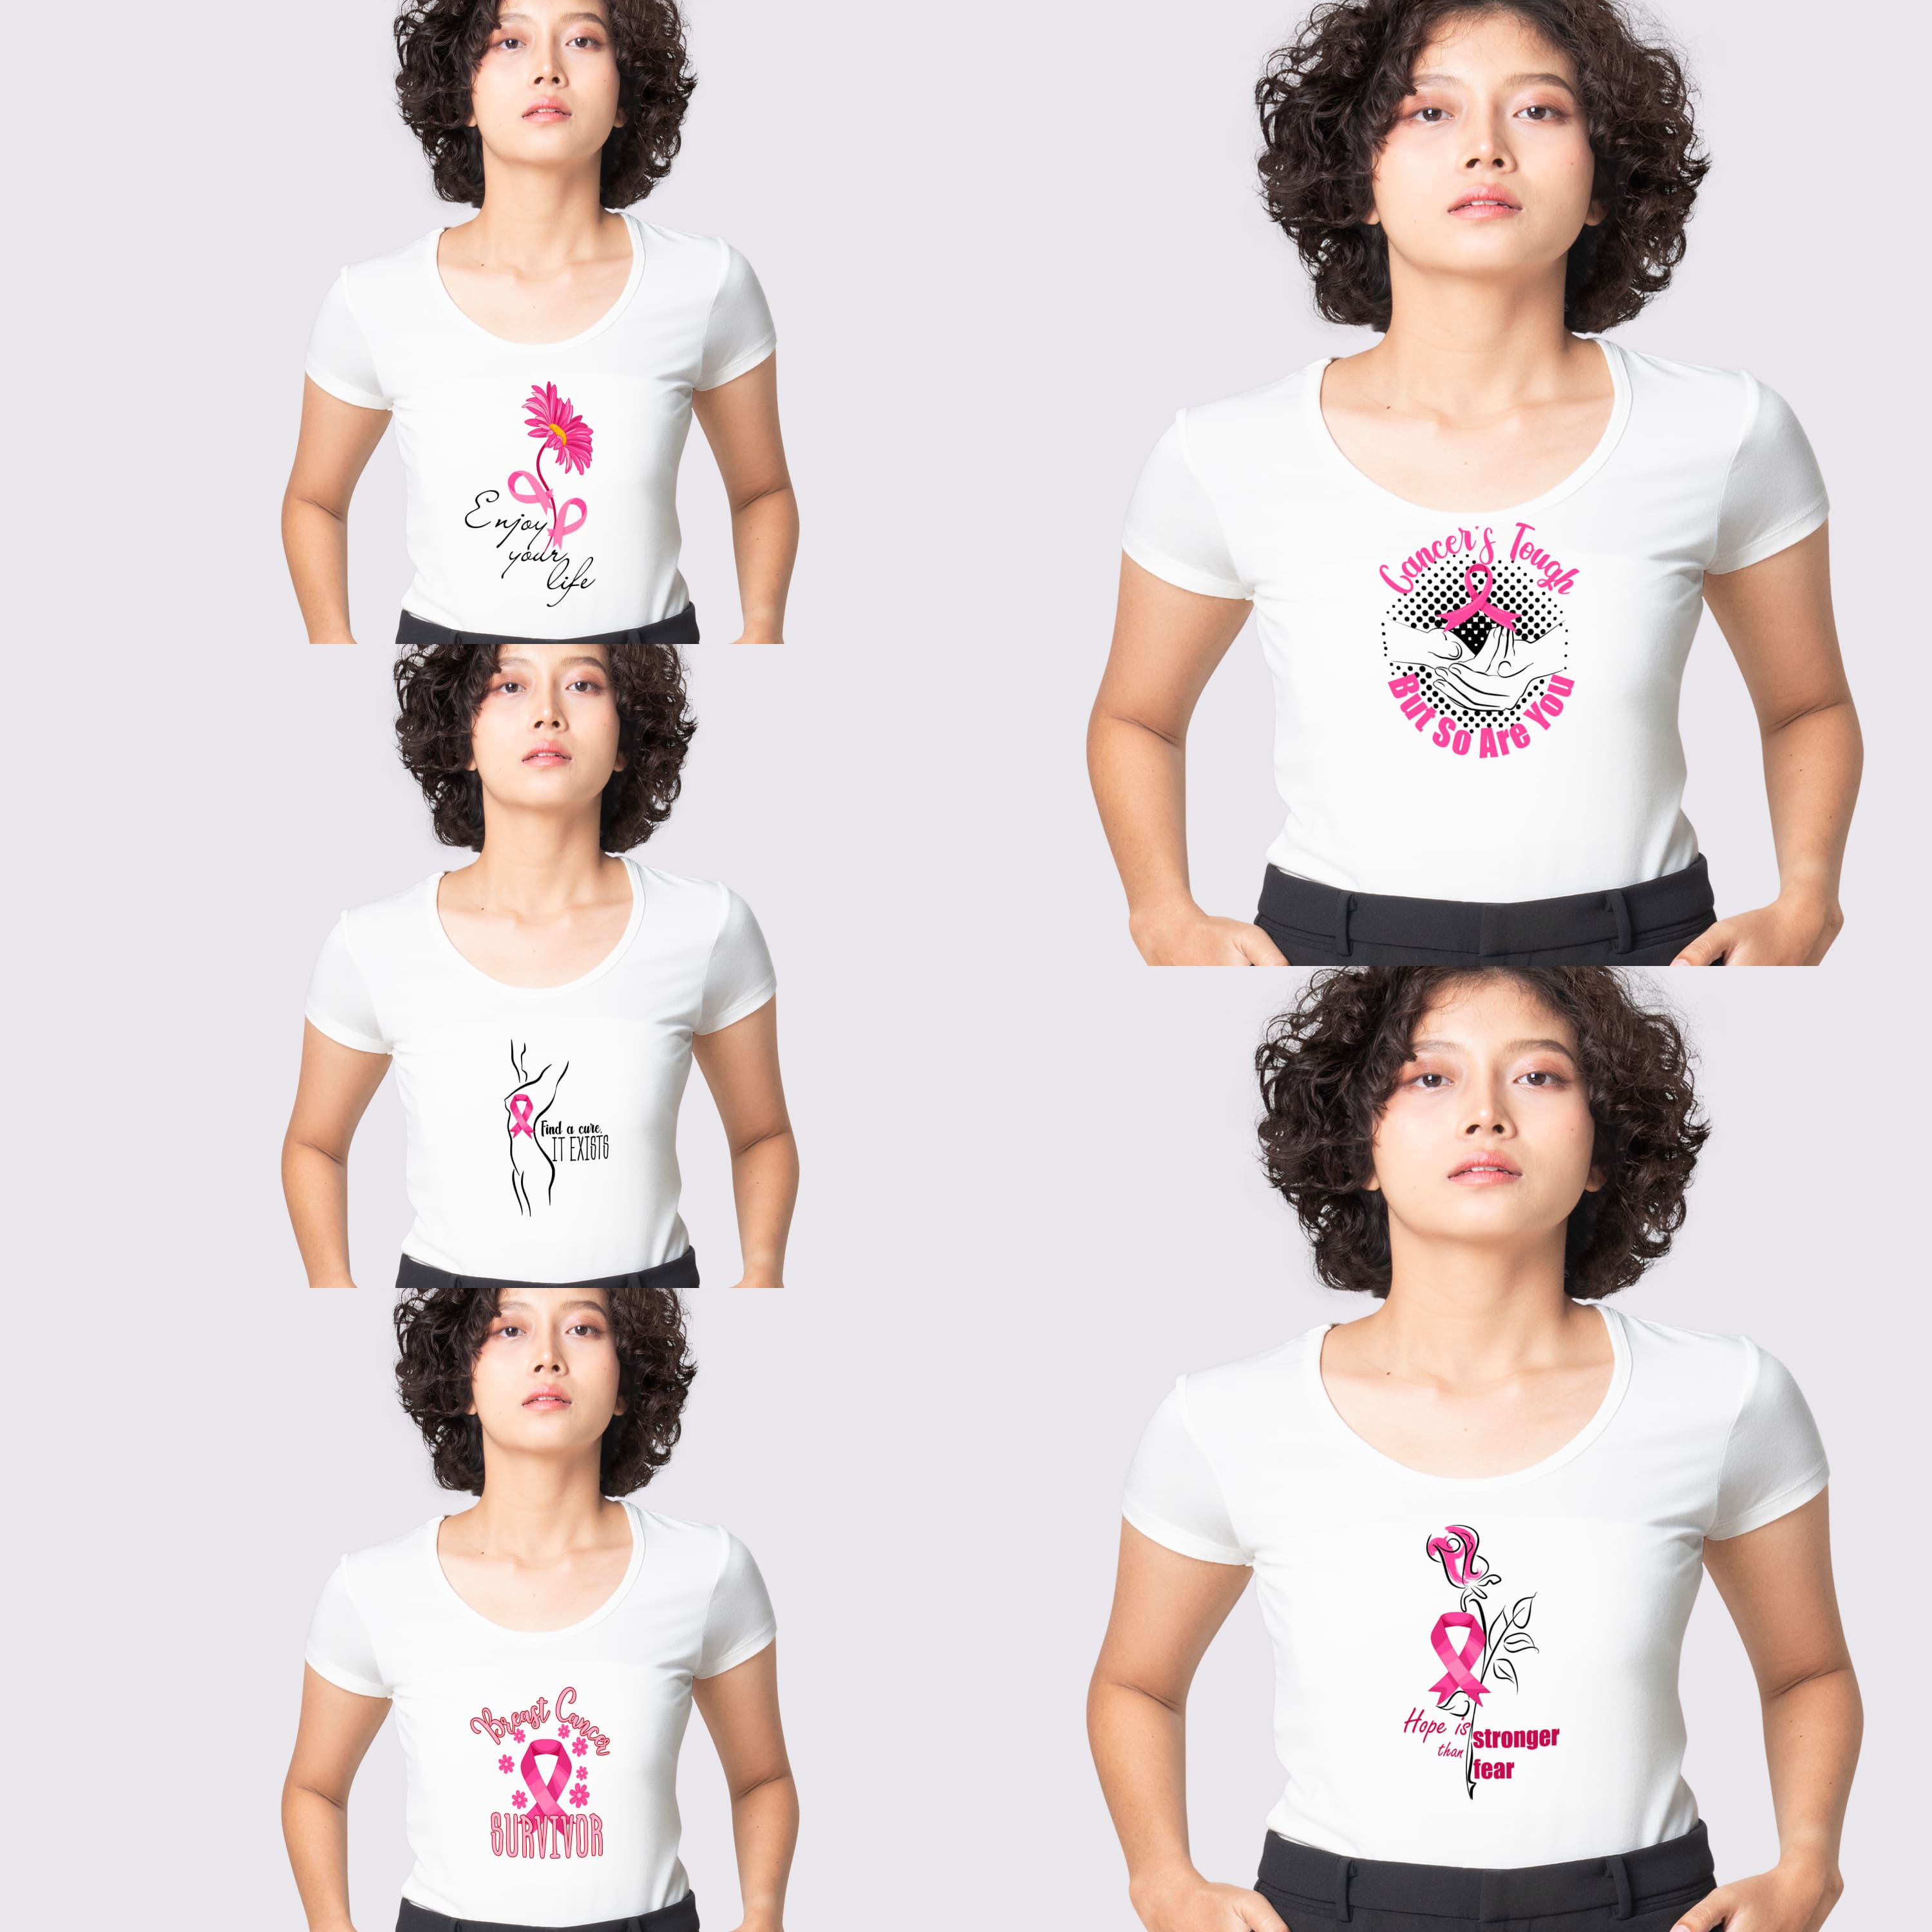 breast cancer survivor SVG T-shirt Designs Bundle cover.